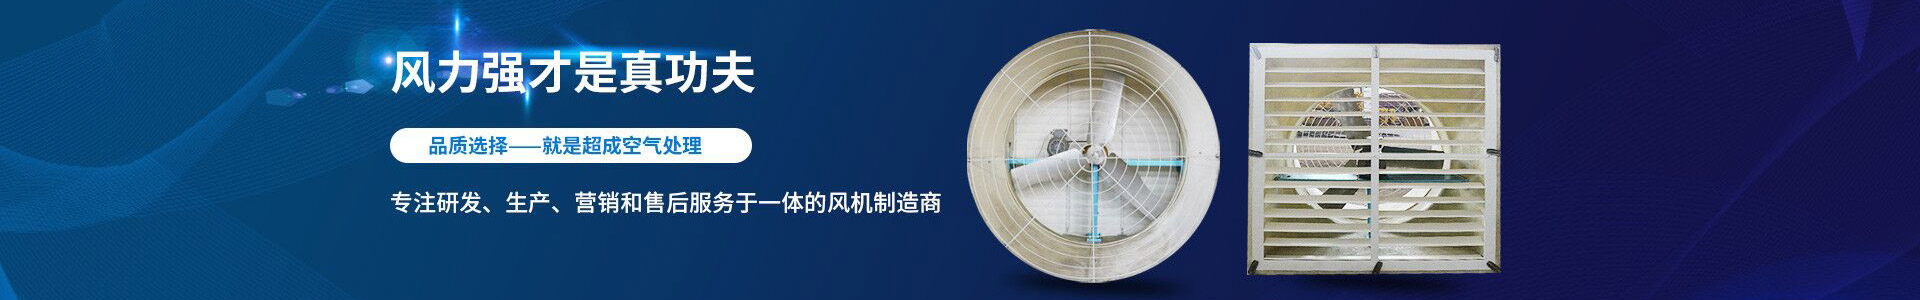 铝合金框架-江阴市超成空气处理设备有限公司